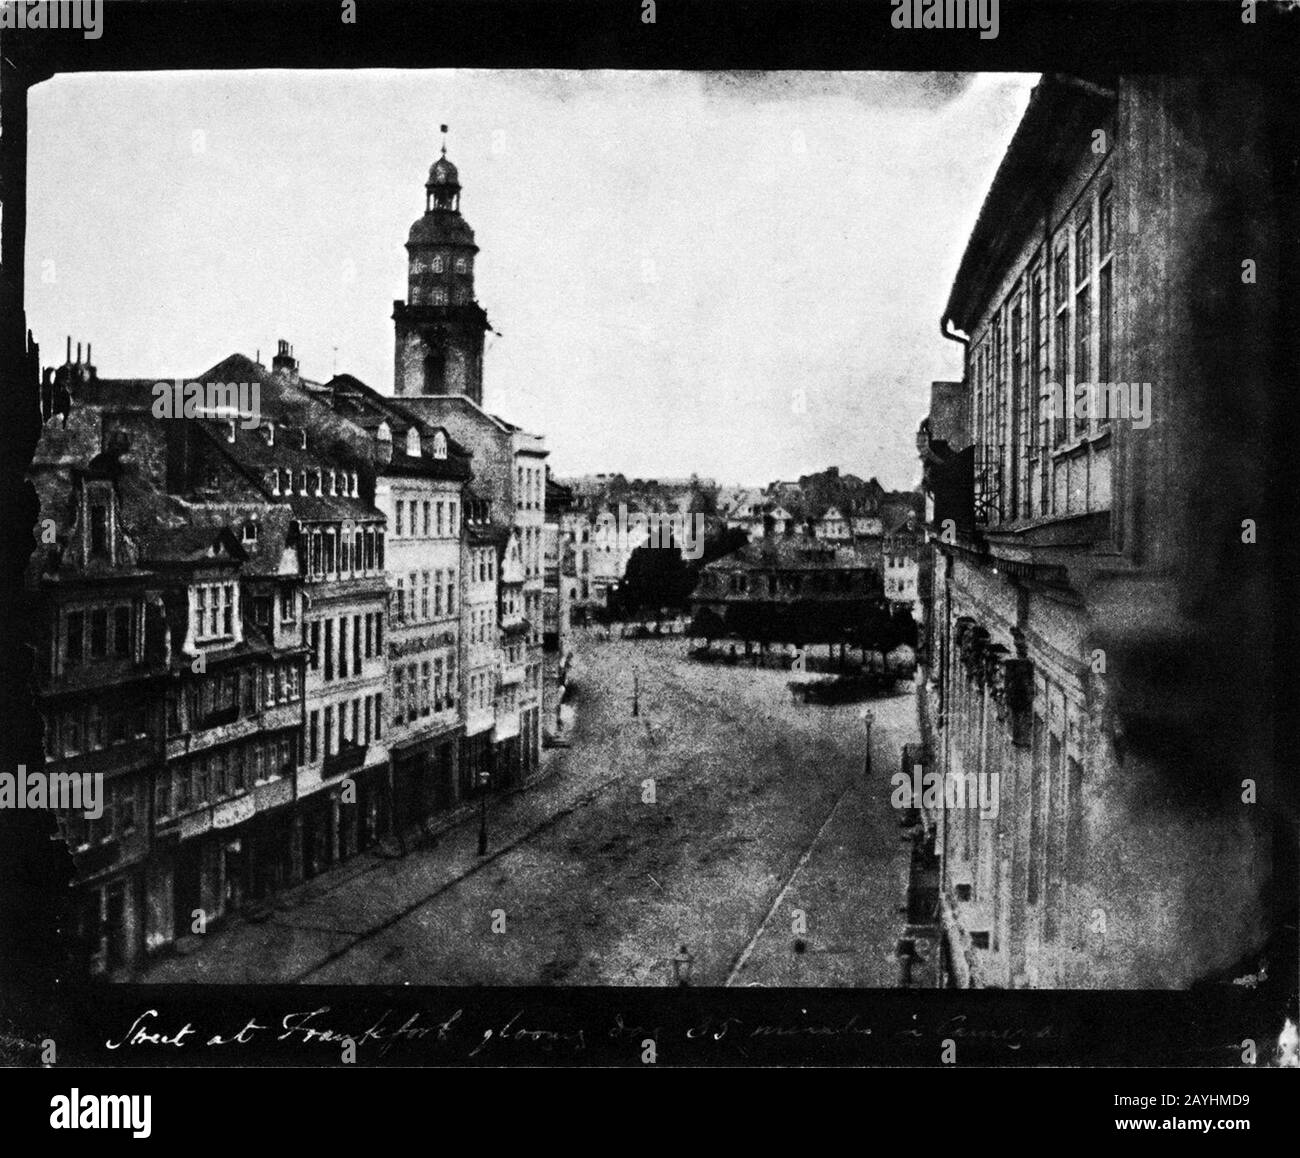 Frankfurt Am Main-William Henry Fox Talbot-Zeil in Richtung Hauptwache-1846. Stock Photo